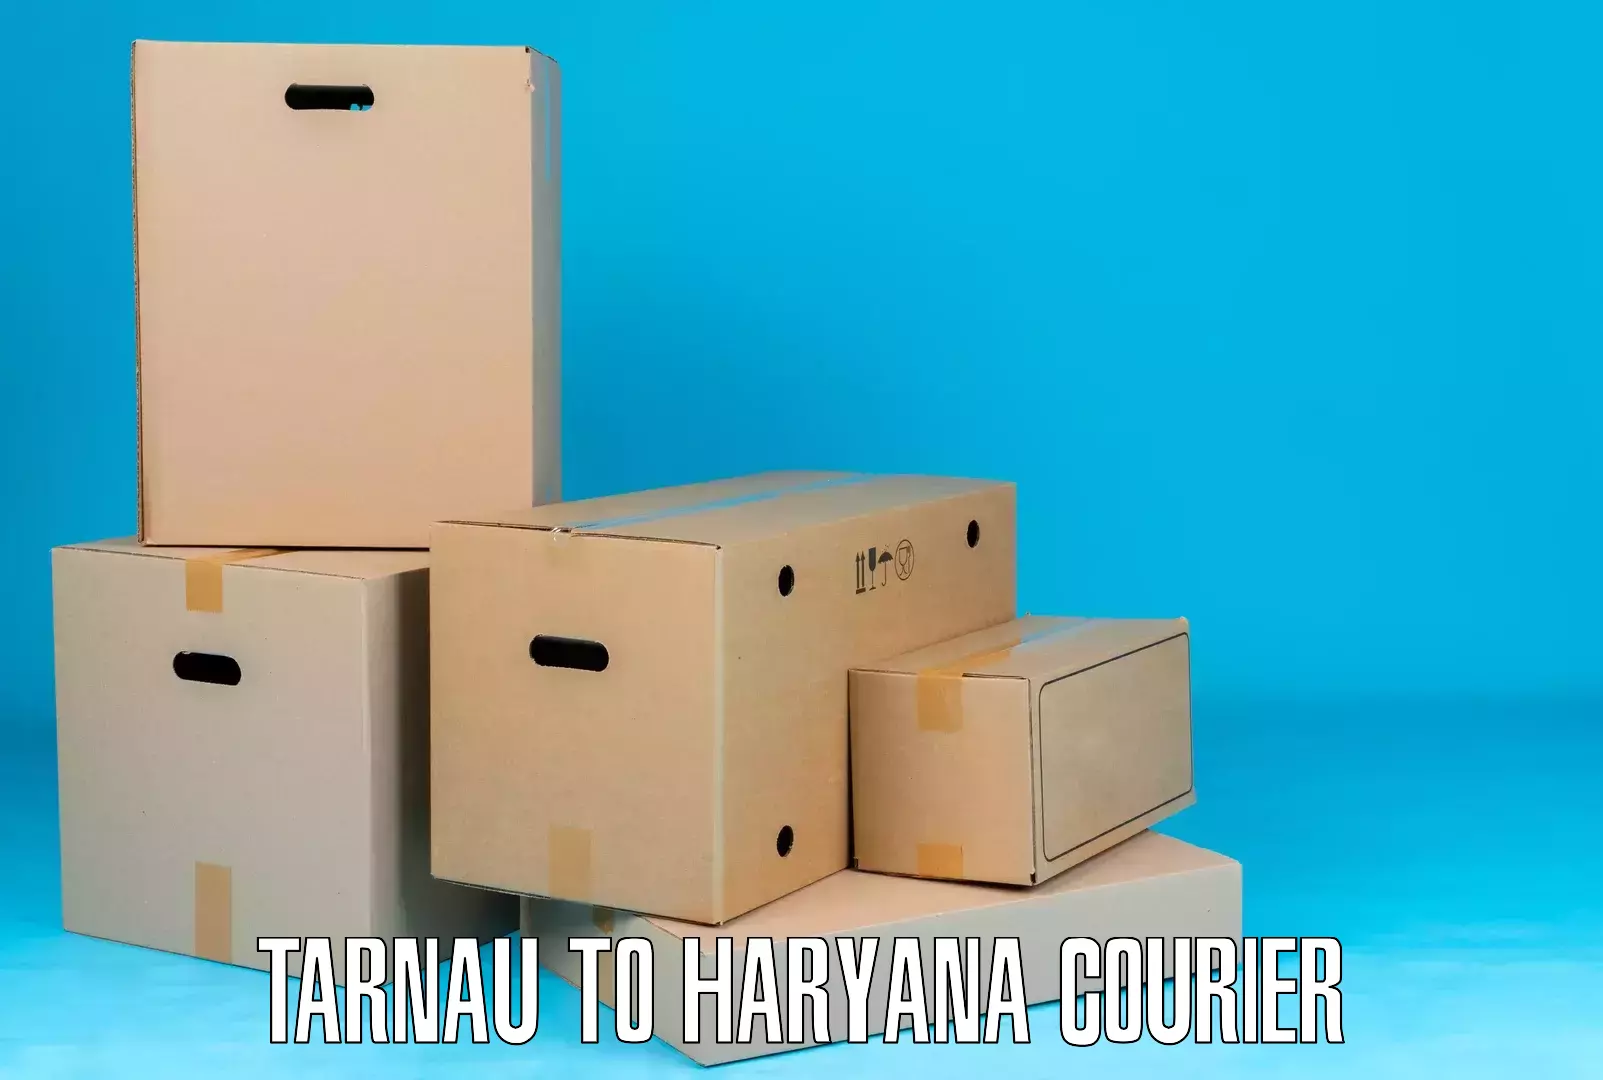 Express package handling in Tarnau to Haryana